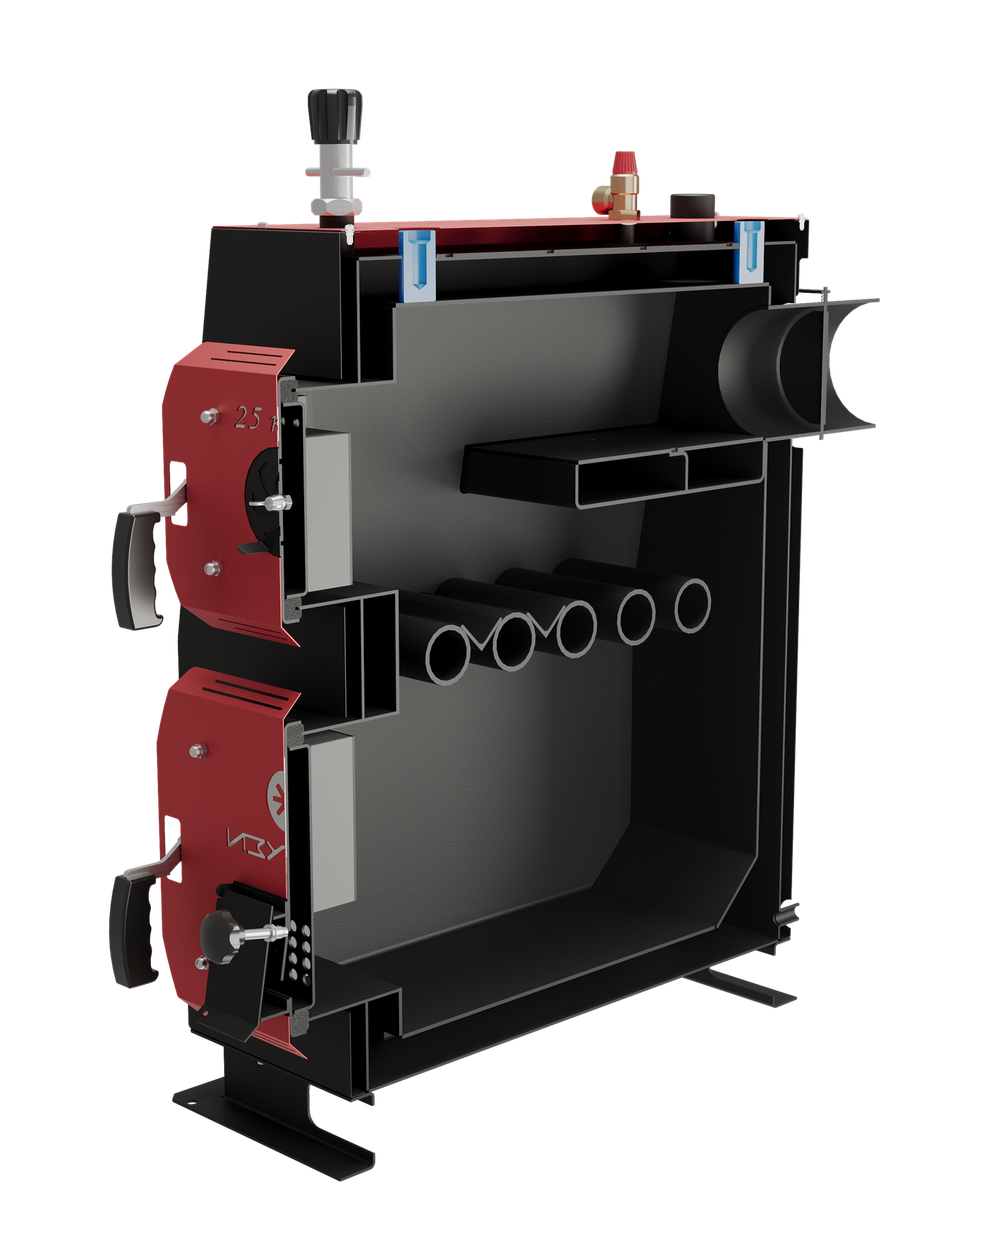 Твердотопливный котел длительного горения Изуран-25 в кожухе на 25 кВт. Отапливаемое помещение до 675 куб.м. В разрезе. Производитель - Изуран